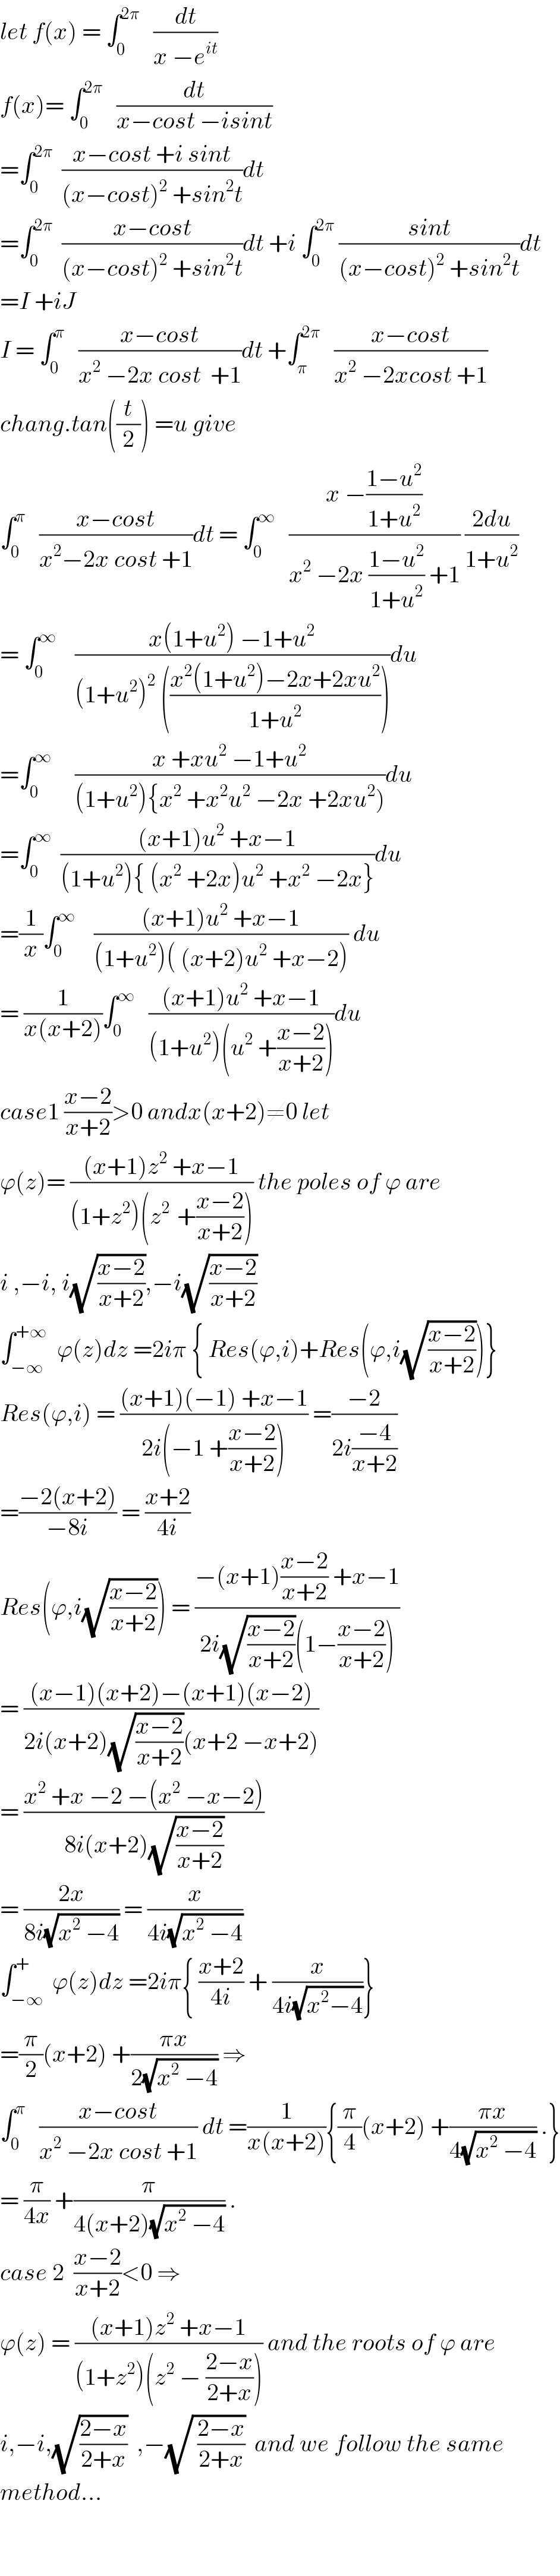 let f(x) = ∫_0 ^(2π)    (dt/(x −e^(it) ))  f(x)= ∫_0 ^(2π)    (dt/(x−cost −isint))  =∫_0 ^(2π)   ((x−cost +i sint)/((x−cost)^2  +sin^2 t))dt  =∫_0 ^(2π)   ((x−cost)/((x−cost)^2  +sin^2 t))dt +i ∫_0 ^(2π)  ((sint)/((x−cost)^2  +sin^2 t))dt  =I +iJ  I = ∫_0 ^π    ((x−cost)/(x^2  −2x cost  +1))dt +∫_π ^(2π)    ((x−cost)/(x^2  −2xcost +1))  chang.tan((t/2)) =u give  ∫_0 ^π    ((x−cost)/(x^2 −2x cost +1))dt = ∫_0 ^∞    ((x −((1−u^2 )/(1+u^2 )))/(x^2  −2x ((1−u^2 )/(1+u^2 )) +1)) ((2du)/(1+u^2 ))  = ∫_0 ^∞     ((x(1+u^2 ) −1+u^2 )/((1+u^2 )^2  (((x^2 (1+u^2 )−2x+2xu^2 )/(1+u^2 )))))du  =∫_0 ^∞      ((x +xu^2  −1+u^2 )/((1+u^2 ){x^2  +x^2 u^2  −2x +2xu^2 )))du  =∫_0 ^∞   (((x+1)u^2  +x−1)/((1+u^2 ){ (x^2  +2x)u^2  +x^2  −2x}))du  =(1/x)∫_0 ^∞     (((x+1)u^2  +x−1)/((1+u^2 )( (x+2)u^2  +x−2))) du  = (1/(x(x+2)))∫_0 ^∞    (((x+1)u^2  +x−1)/((1+u^2 )(u^2  +((x−2)/(x+2)))))du  case1 ((x−2)/(x+2))>0 andx(x+2)≠0 let  ϕ(z)= (((x+1)z^2  +x−1)/((1+z^2 )(z^(2 )  +((x−2)/(x+2))))) the poles of ϕ are  i ,−i, i(√((x−2)/(x+2))),−i(√((x−2)/(x+2)))  ∫_(−∞) ^(+∞)   ϕ(z)dz =2iπ { Res(ϕ,i)+Res(ϕ,i(√((x−2)/(x+2))))}  Res(ϕ,i) = (((x+1)(−1) +x−1)/(2i(−1 +((x−2)/(x+2))))) =((−2)/(2i((−4)/(x+2))))  =((−2(x+2))/(−8i)) = ((x+2)/(4i))  Res(ϕ,i(√((x−2)/(x+2)))) = ((−(x+1)((x−2)/(x+2)) +x−1)/(2i(√((x−2)/(x+2)))(1−((x−2)/(x+2)))))  = (((x−1)(x+2)−(x+1)(x−2))/(2i(x+2)(√((x−2)/(x+2)))(x+2 −x+2)))  = ((x^2  +x −2 −(x^2  −x−2))/(8i(x+2)(√((x−2)/(x+2)))))  = ((2x)/(8i(√(x^2  −4)))) = (x/(4i(√(x^2  −4))))  ∫_(−∞) ^+  ϕ(z)dz =2iπ{ ((x+2)/(4i)) + (x/(4i(√(x^2 −4))))}  =(π/2)(x+2) +((πx)/(2(√(x^2  −4)))) ⇒  ∫_0 ^π    ((x−cost)/(x^2  −2x cost +1)) dt =(1/(x(x+2))){(π/4)(x+2) +((πx)/(4(√(x^2  −4)))) .}  = (π/(4x)) +(π/(4(x+2)(√(x^2  −4)))) .  case 2  ((x−2)/(x+2))<0 ⇒  ϕ(z) = (((x+1)z^2  +x−1)/((1+z^2 )(z^2  − ((2−x)/(2+x))))) and the roots of ϕ are  i,−i,(√((2−x)/(2+x)))  ,−(√( ((2−x)/(2+x))))  and we follow the same  method...      